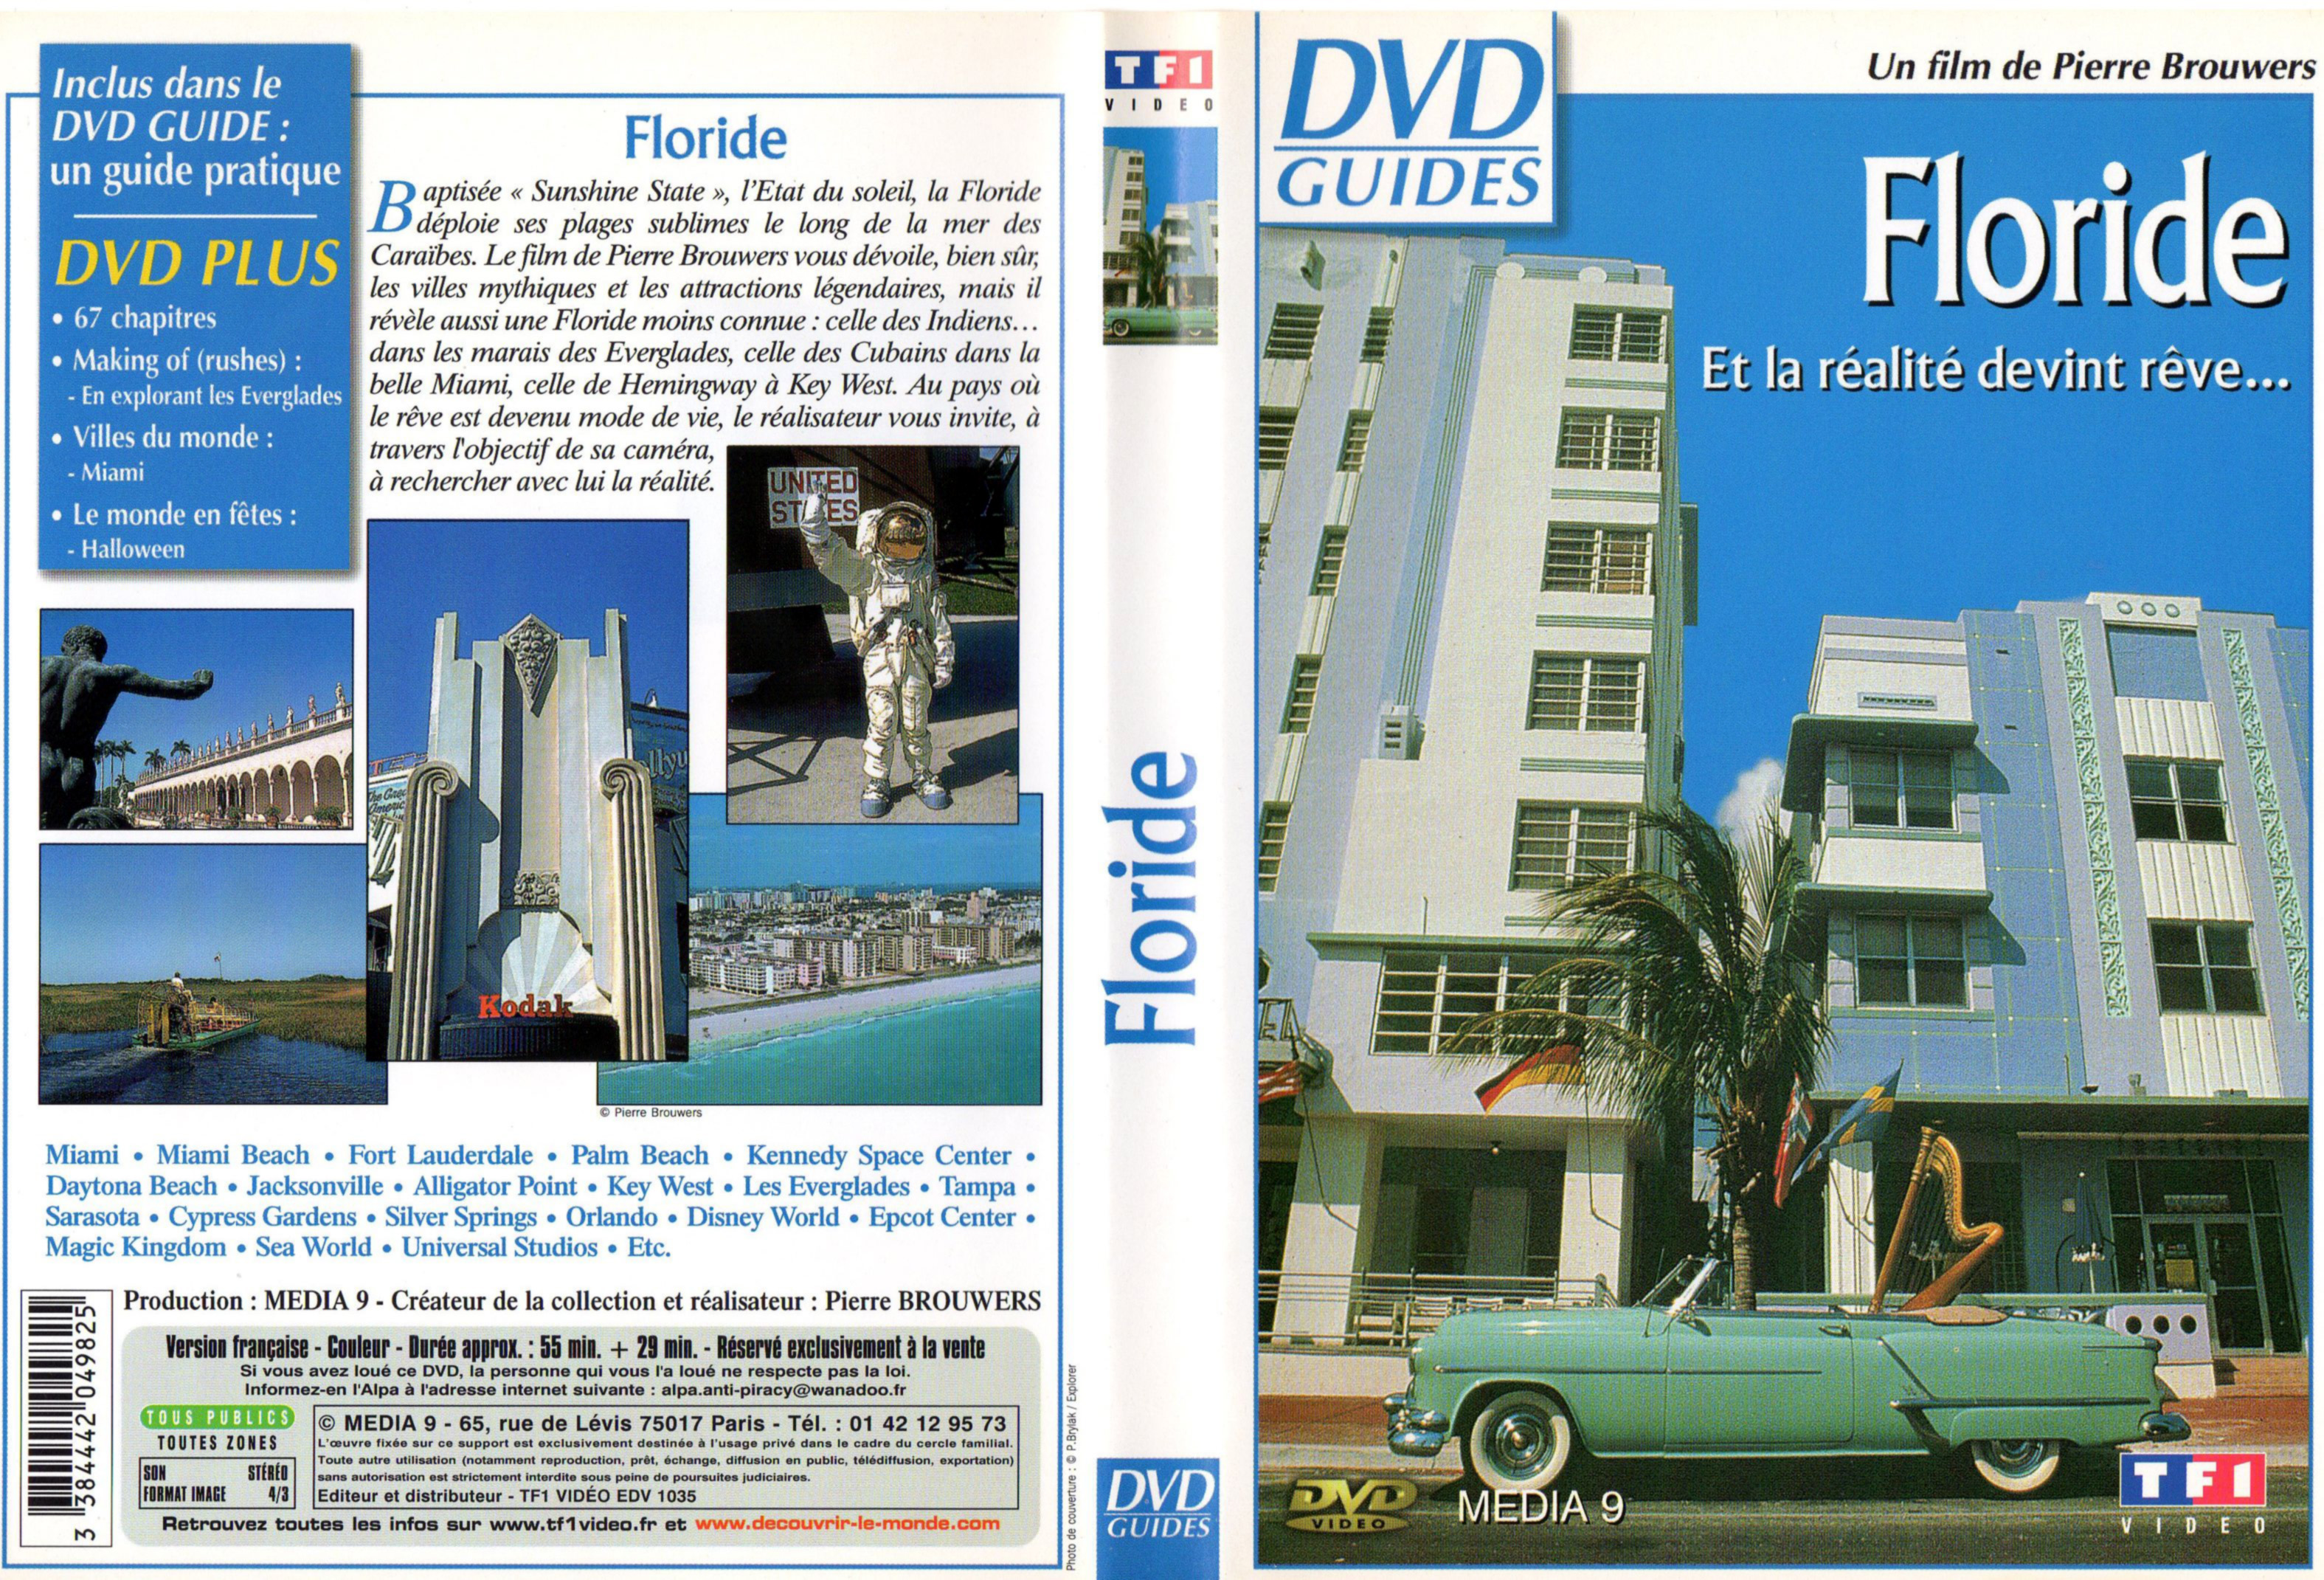 Jaquette DVD Floride (DVD Guides)